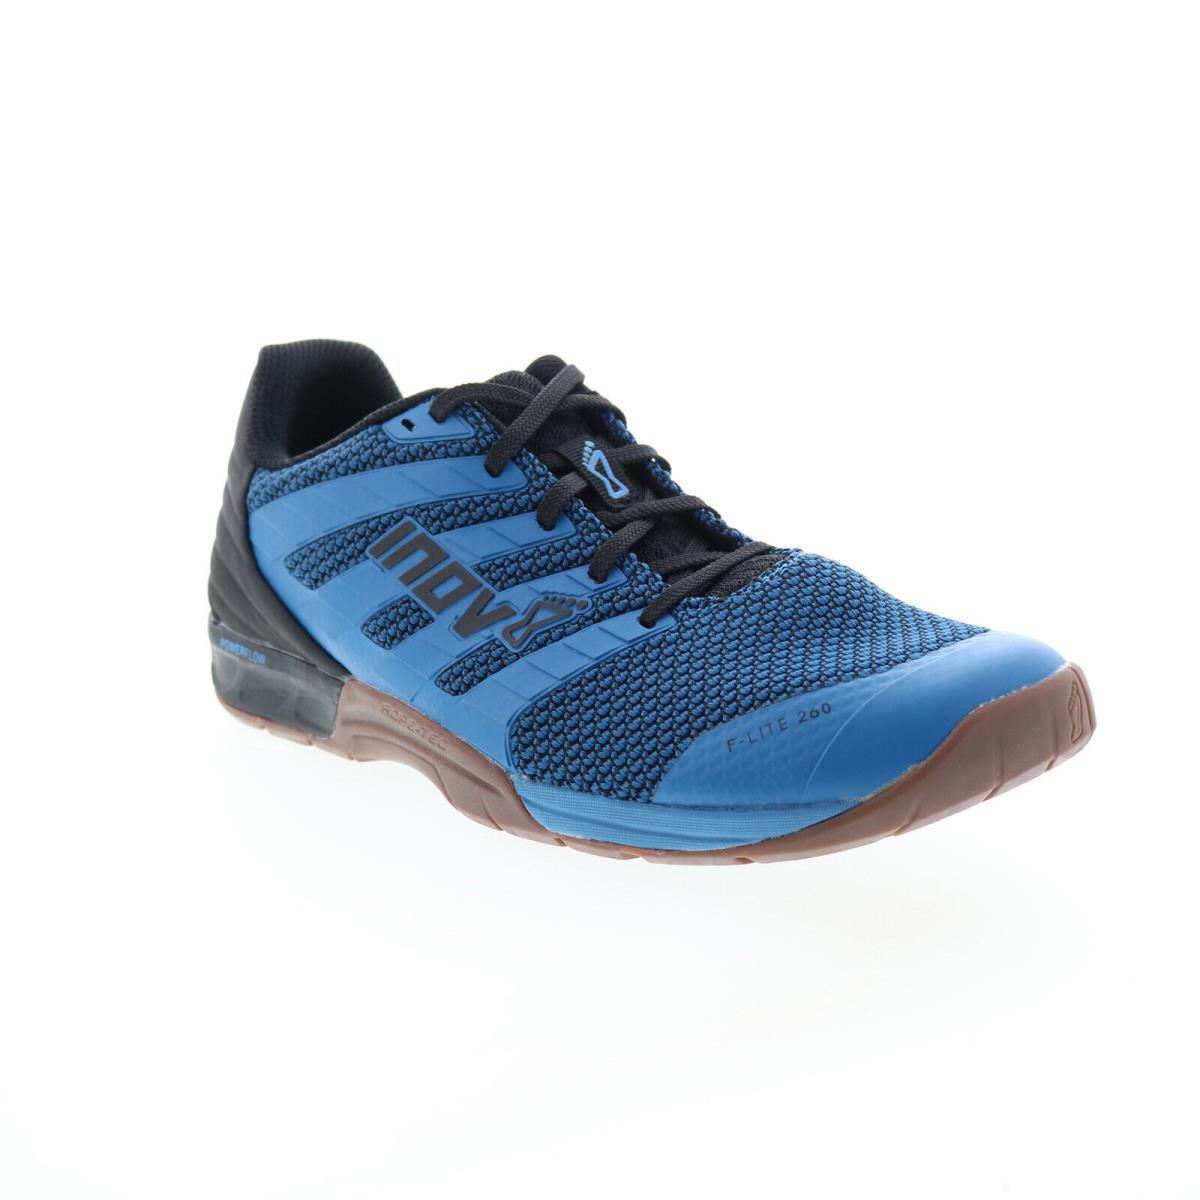 Inov-8 F-lite 260 V2 000992-BLBKGU Mens Blue Athletic Cross Training Shoes